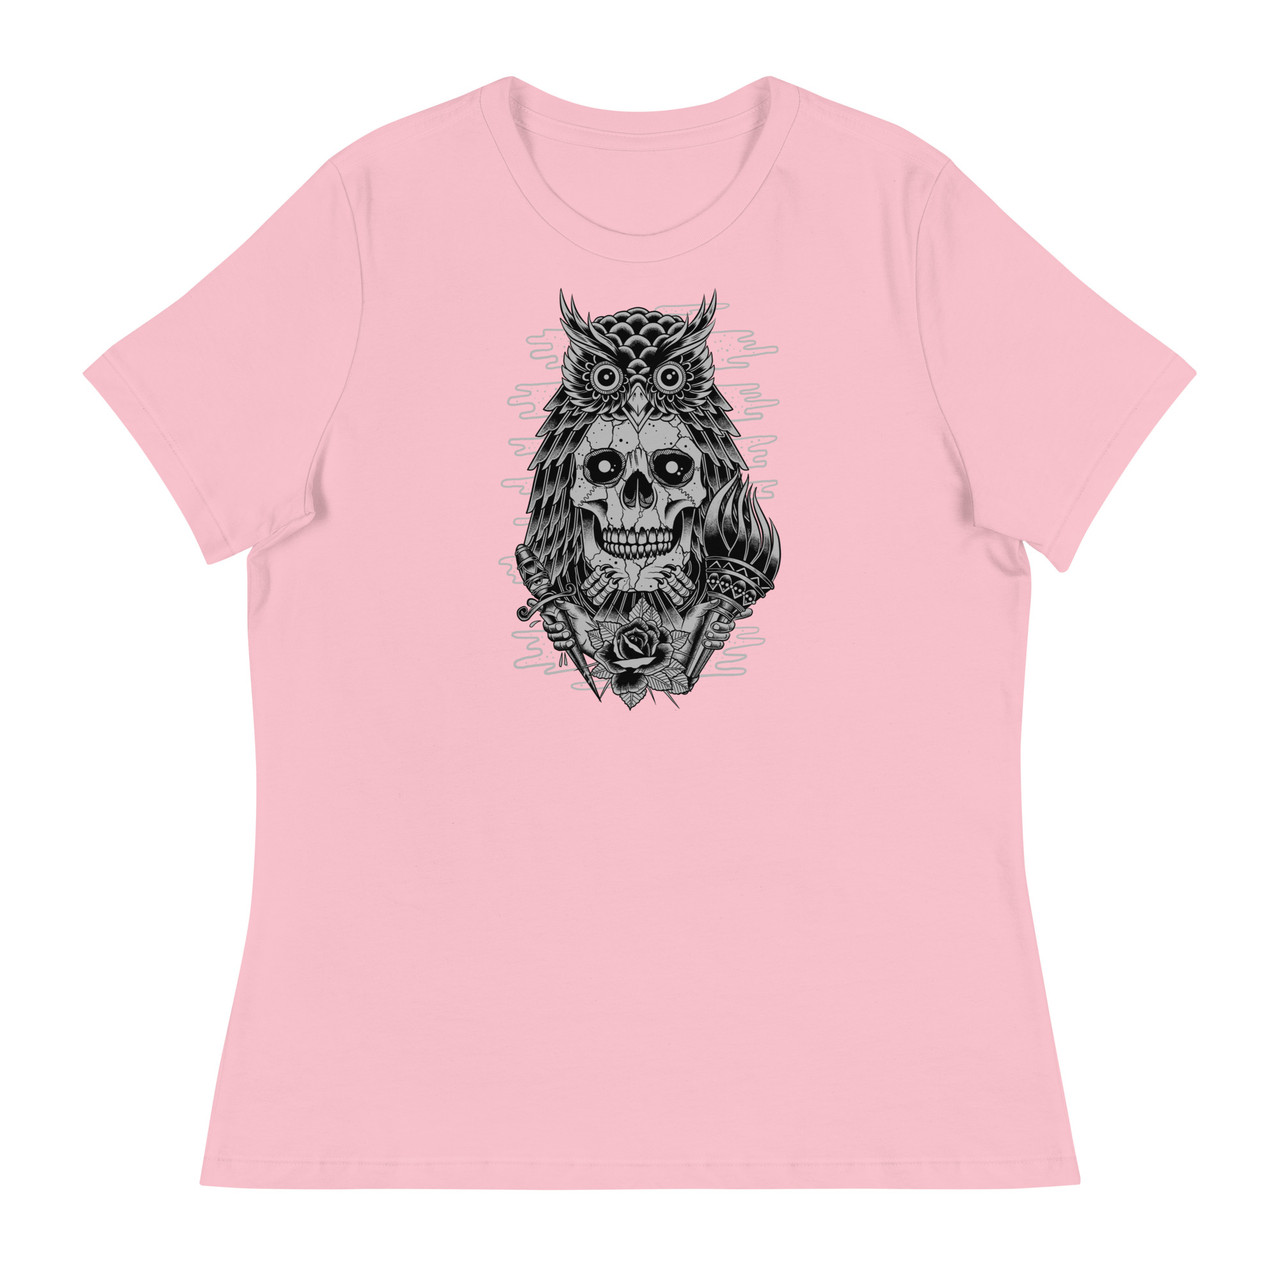 Owl Skull Women's Relaxed T-Shirt - Bella + Canvas 6400 